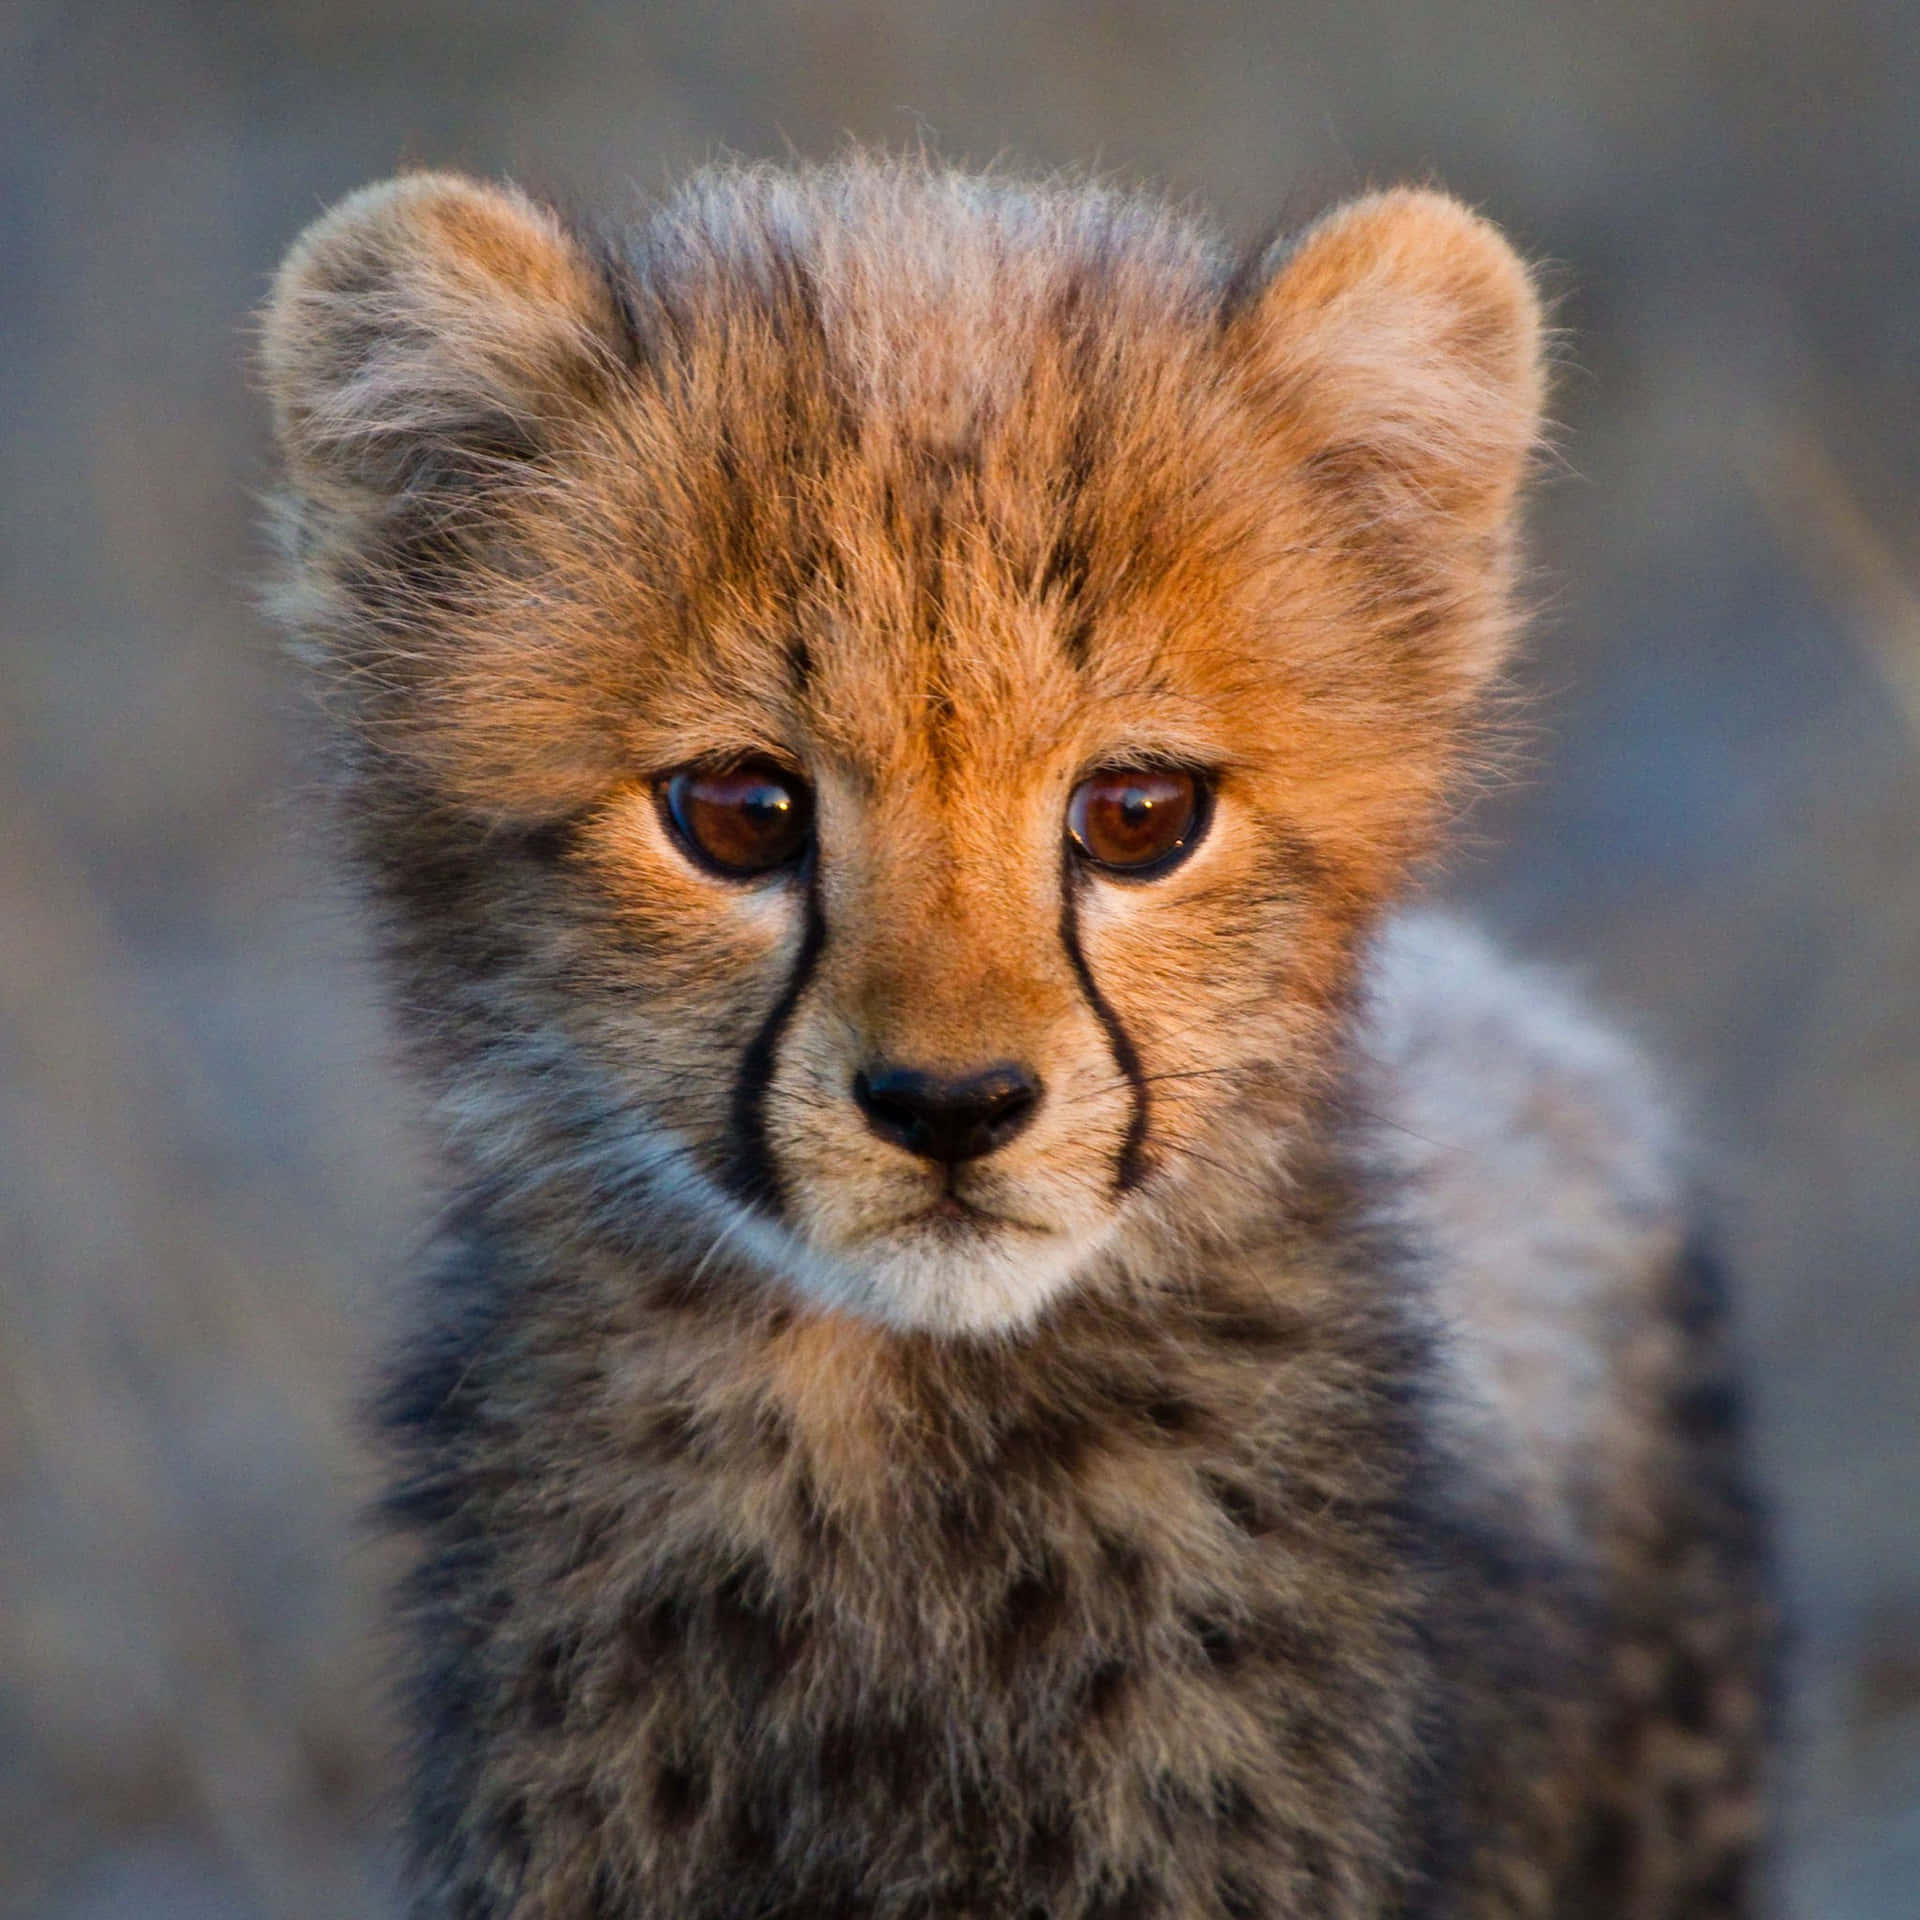 Papel De Parede Do Adorável Filhote De Cheetah Bebê. Papel de Parede